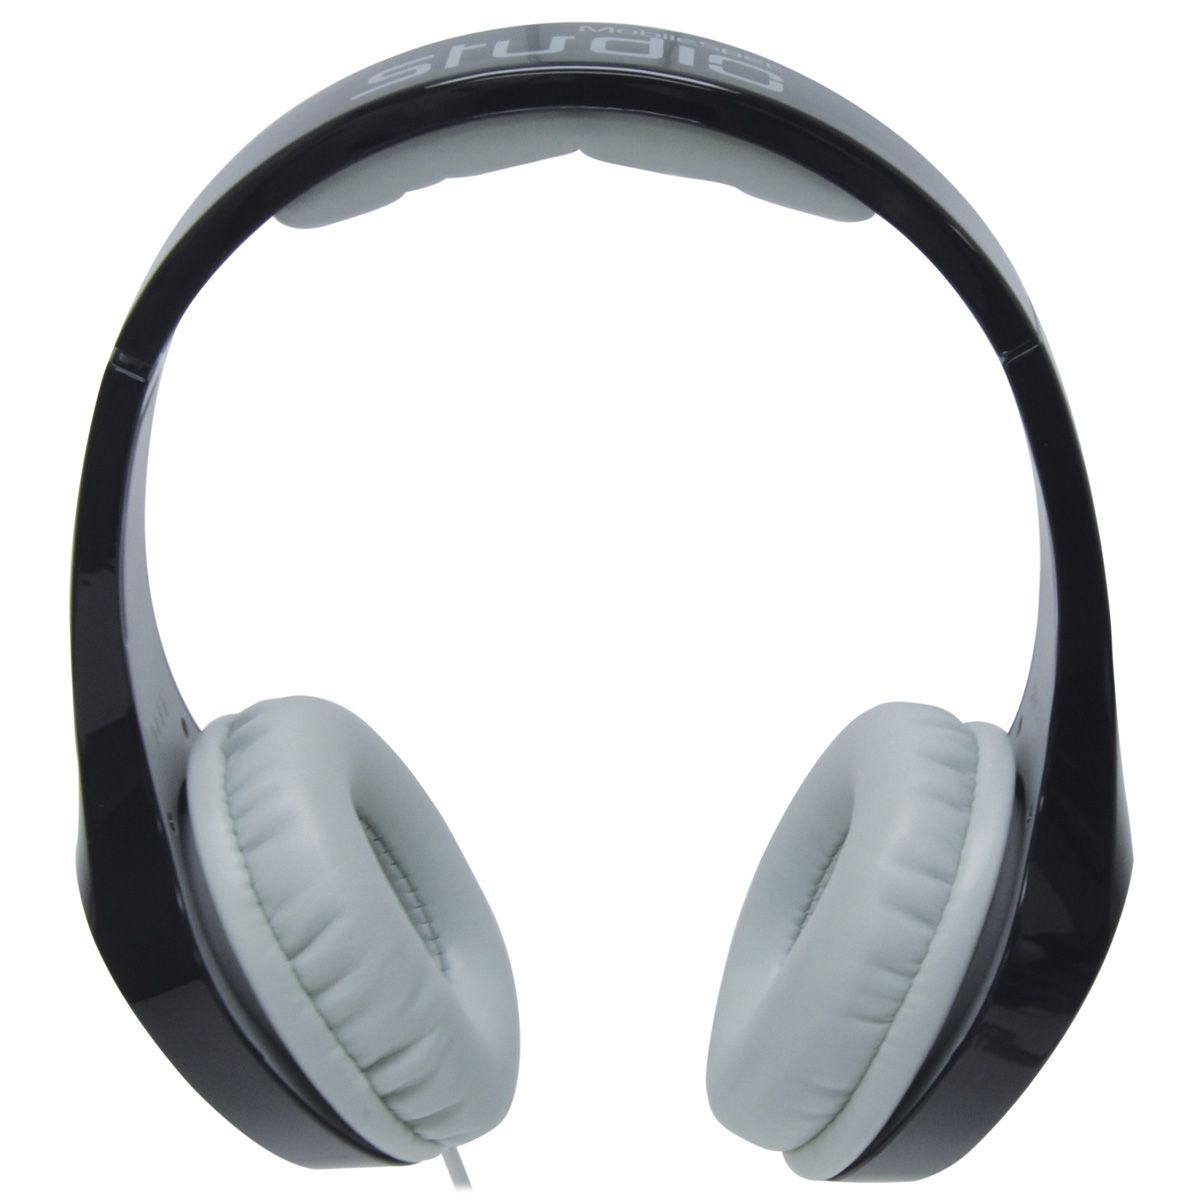 haar kreupel account Fingerhut - MobileSpec Studio Series Wired Stereo Headphones with Mic